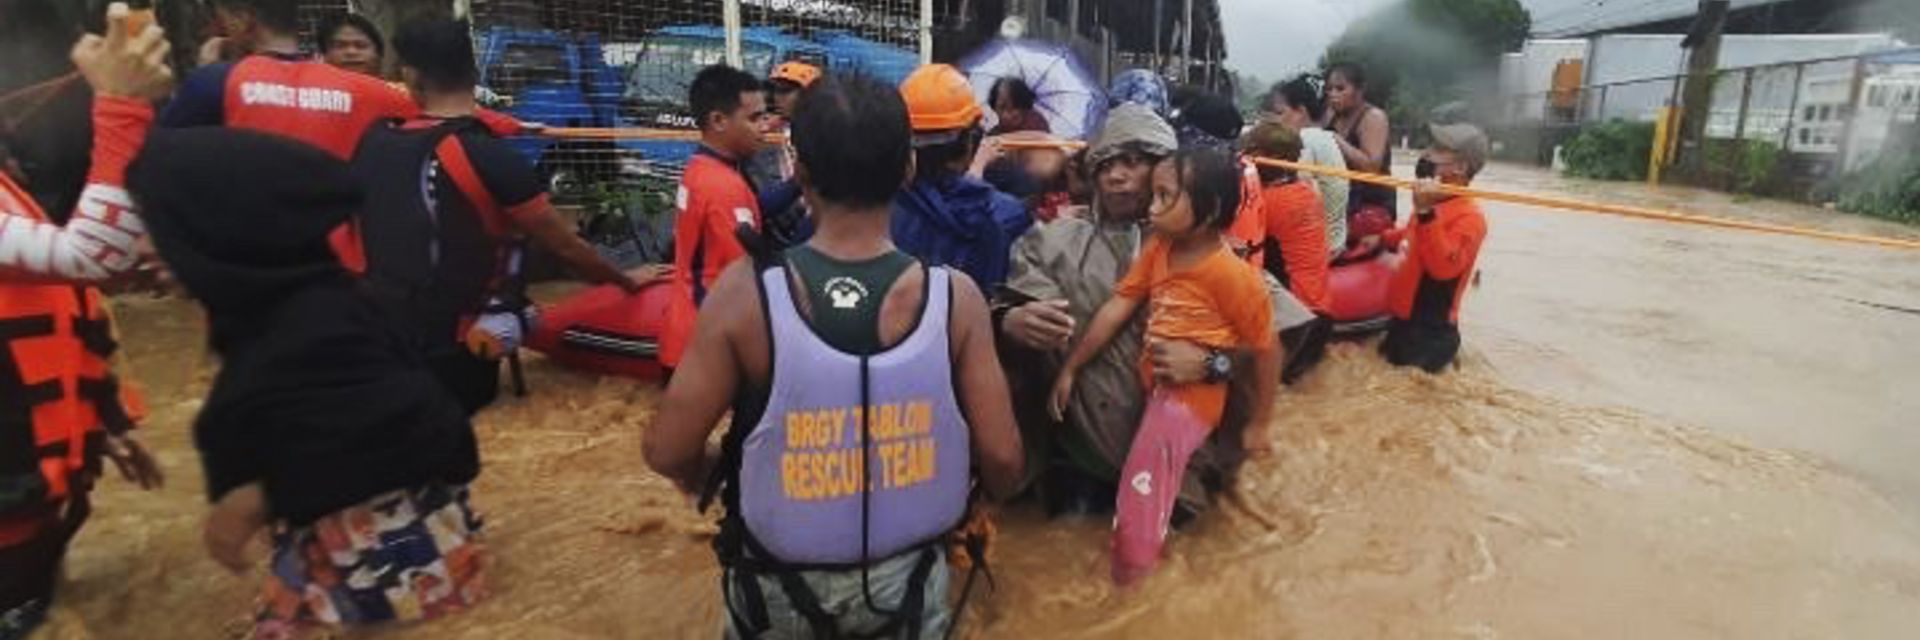 Воден апокалипсис, рухнали къщи, повалени ел. стълбове след удара на Раи във Филипините (снимки и видео)